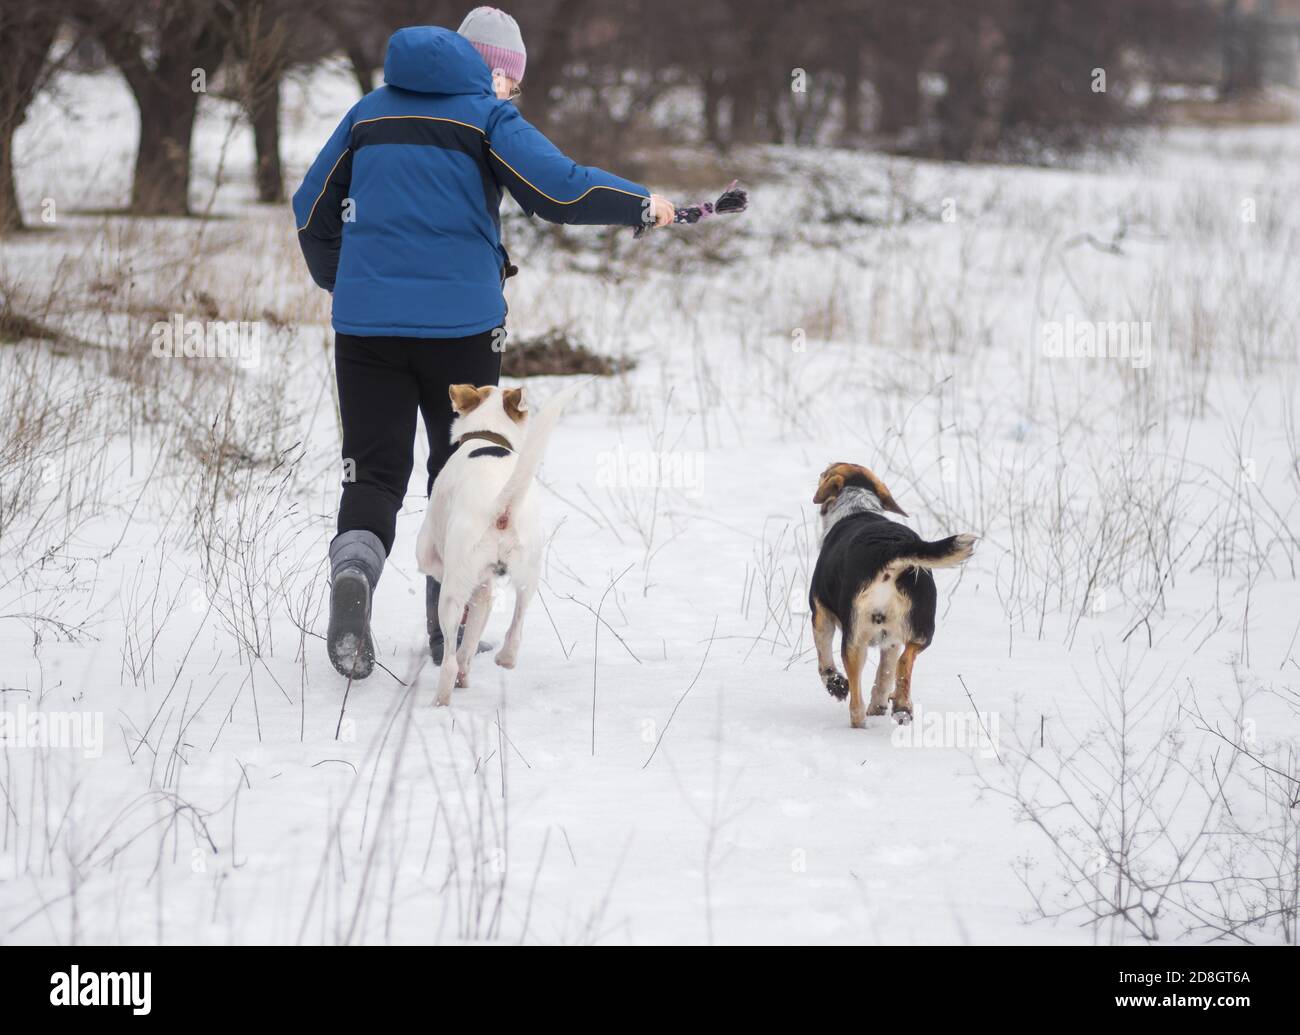 Femme prenant une petite corde dans la main droite tout en courant sur un terrain enneigé avec deux chiens de race mixte en hiver saison Banque D'Images